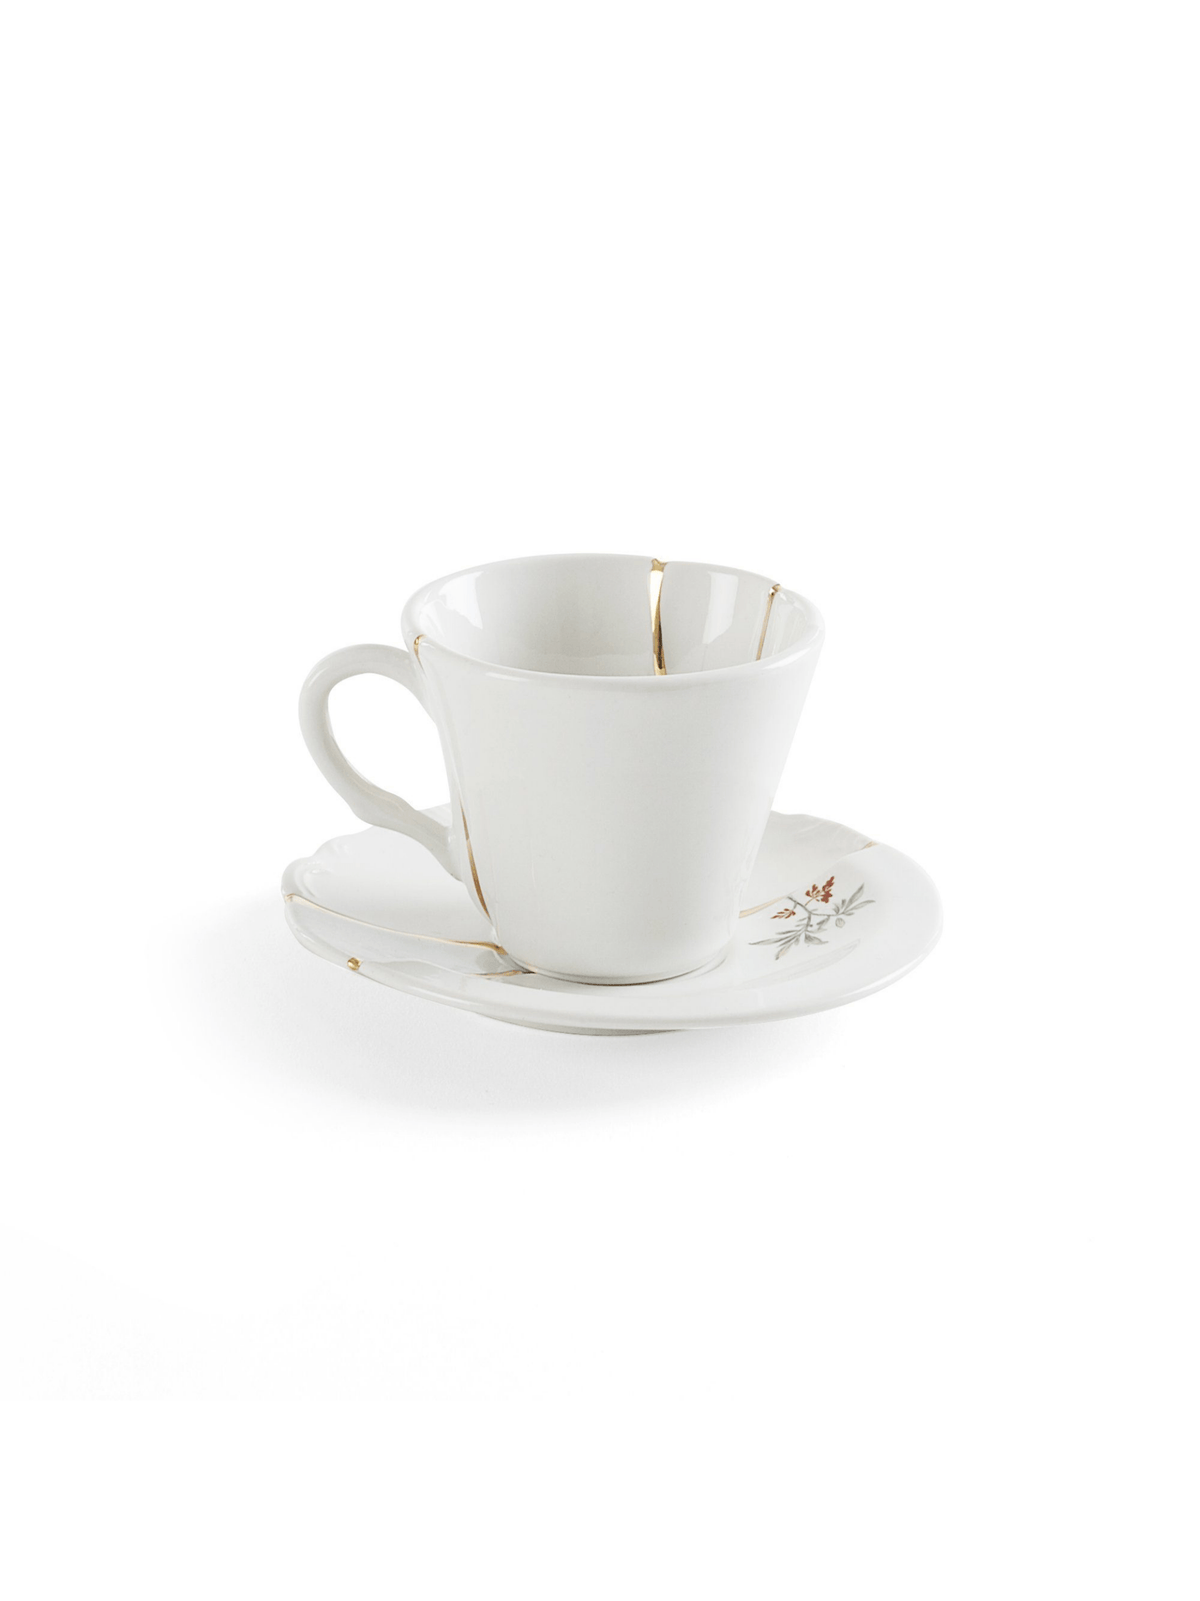 Kintsugi / Coffee Cup With Saucer / Design 3 Seletti Seletti 